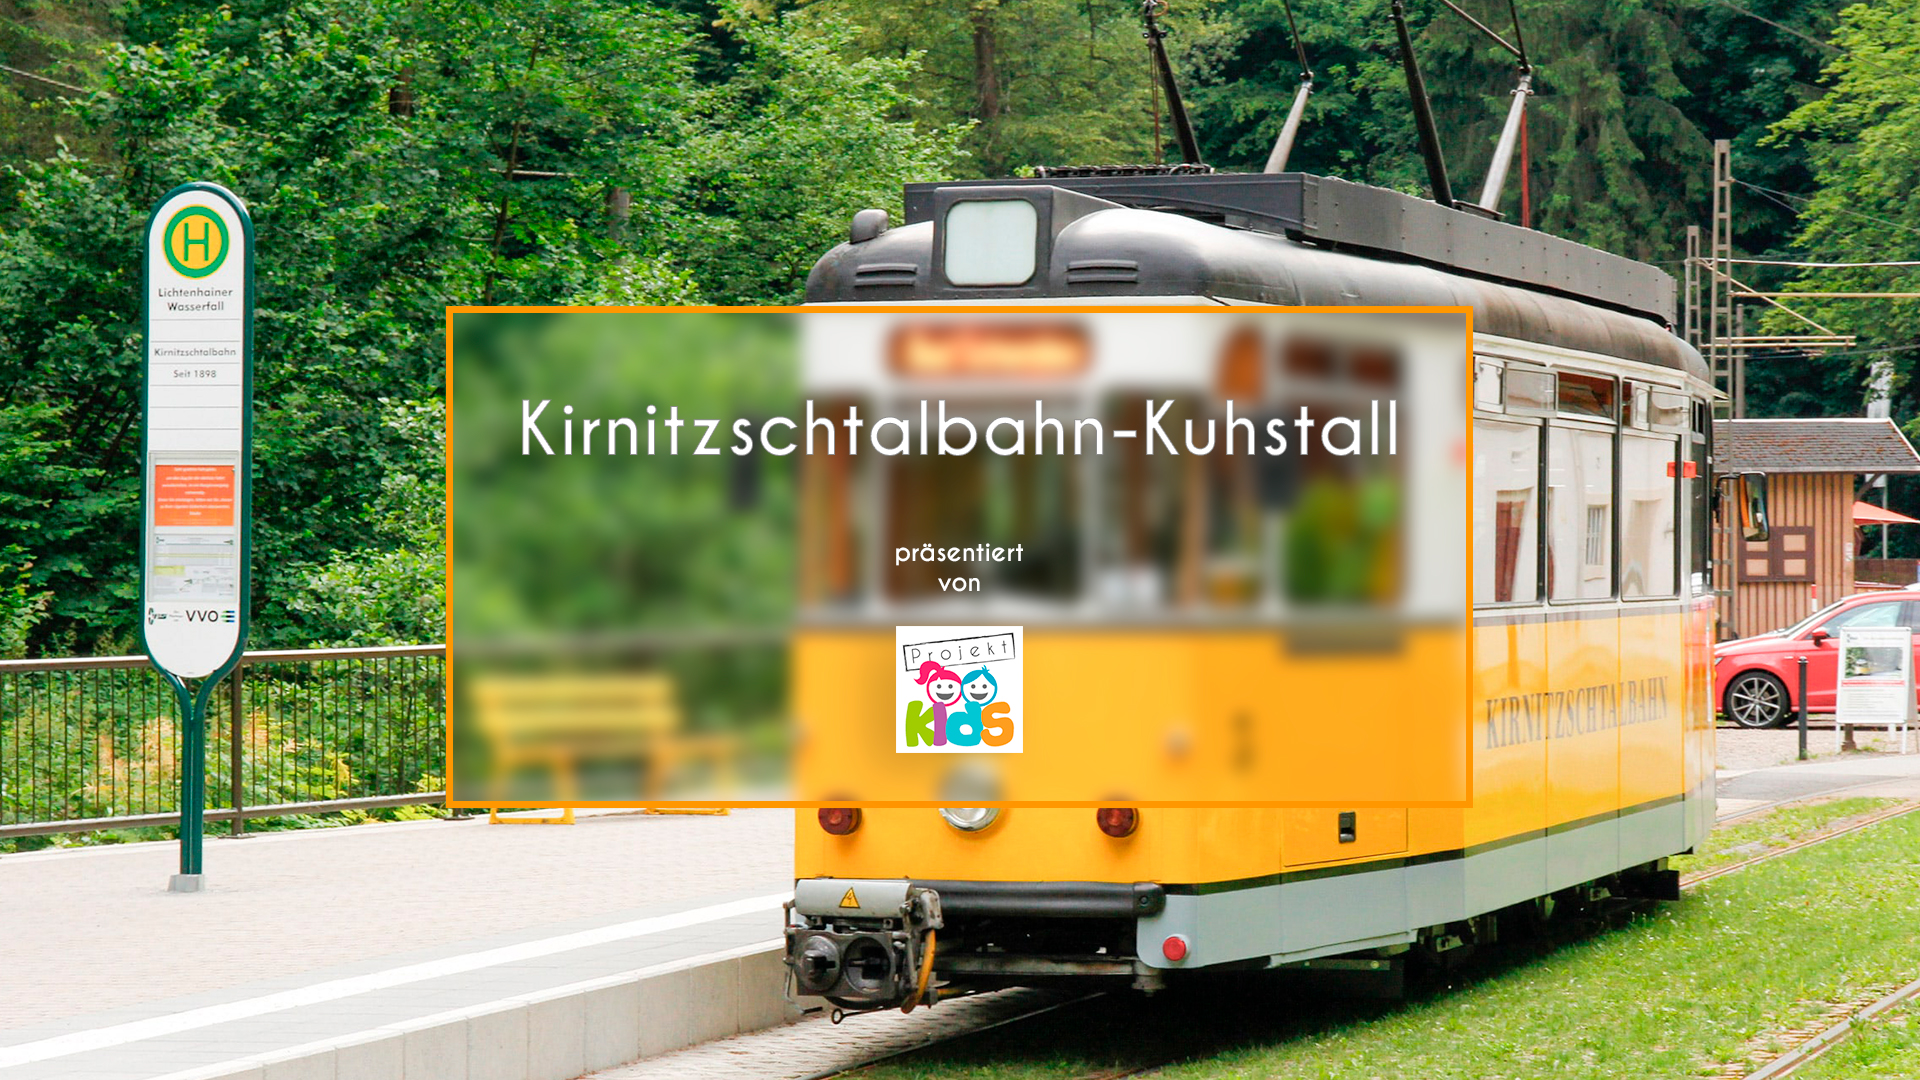 Video - Kirnitzschtalbahn Kuhstall - Sächsische Schweiz